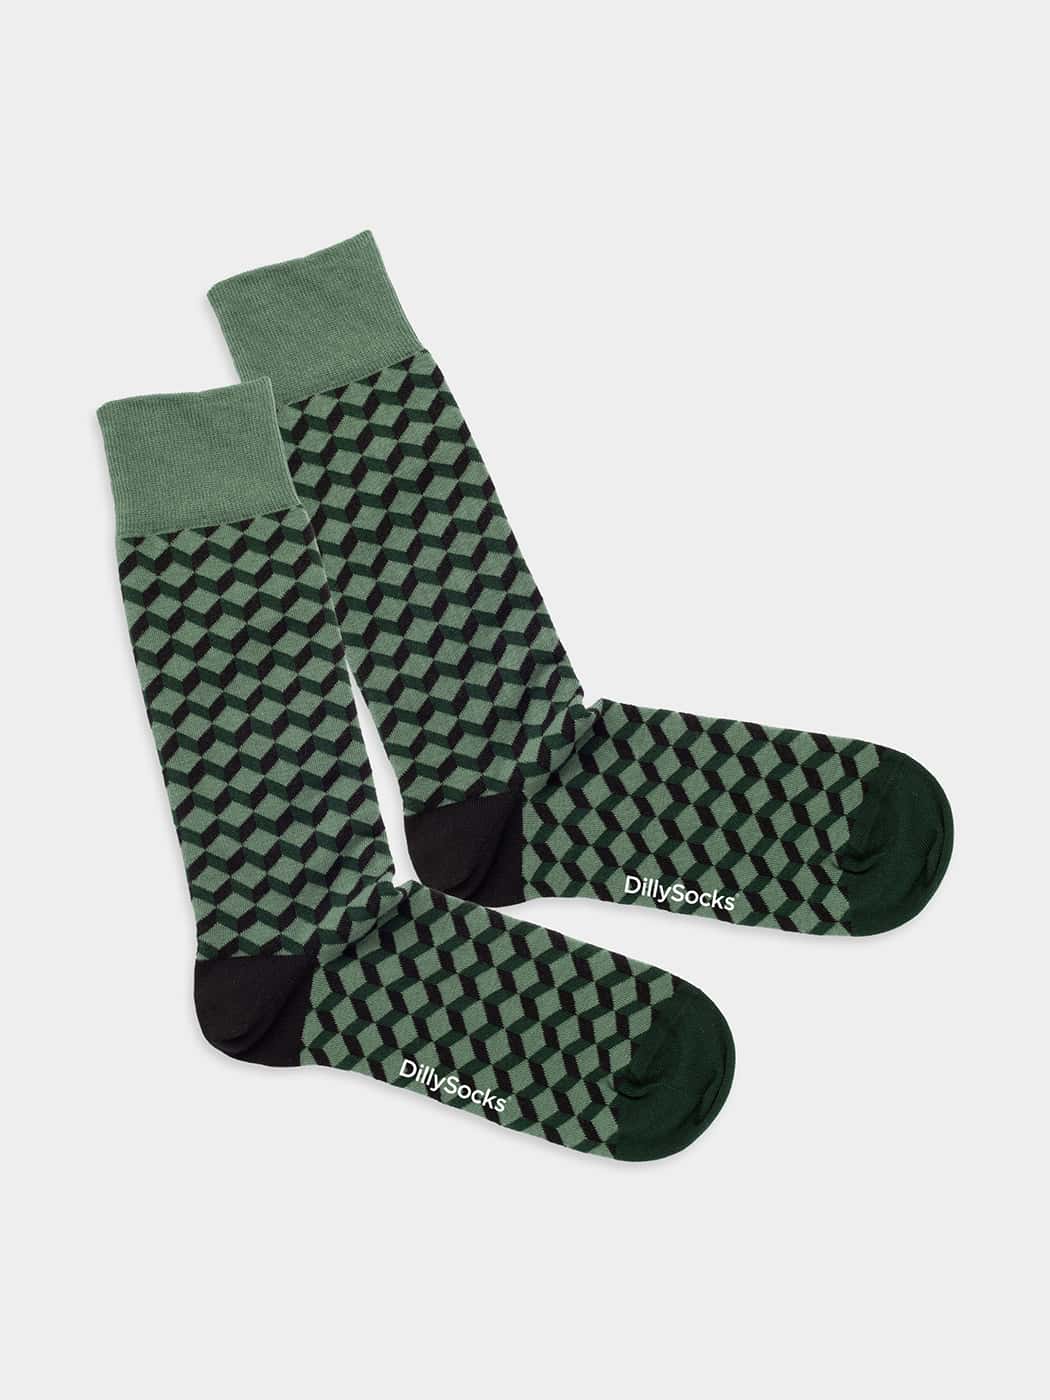 - Socken in Grün mit Dice Motiv/Muster von DillySocks